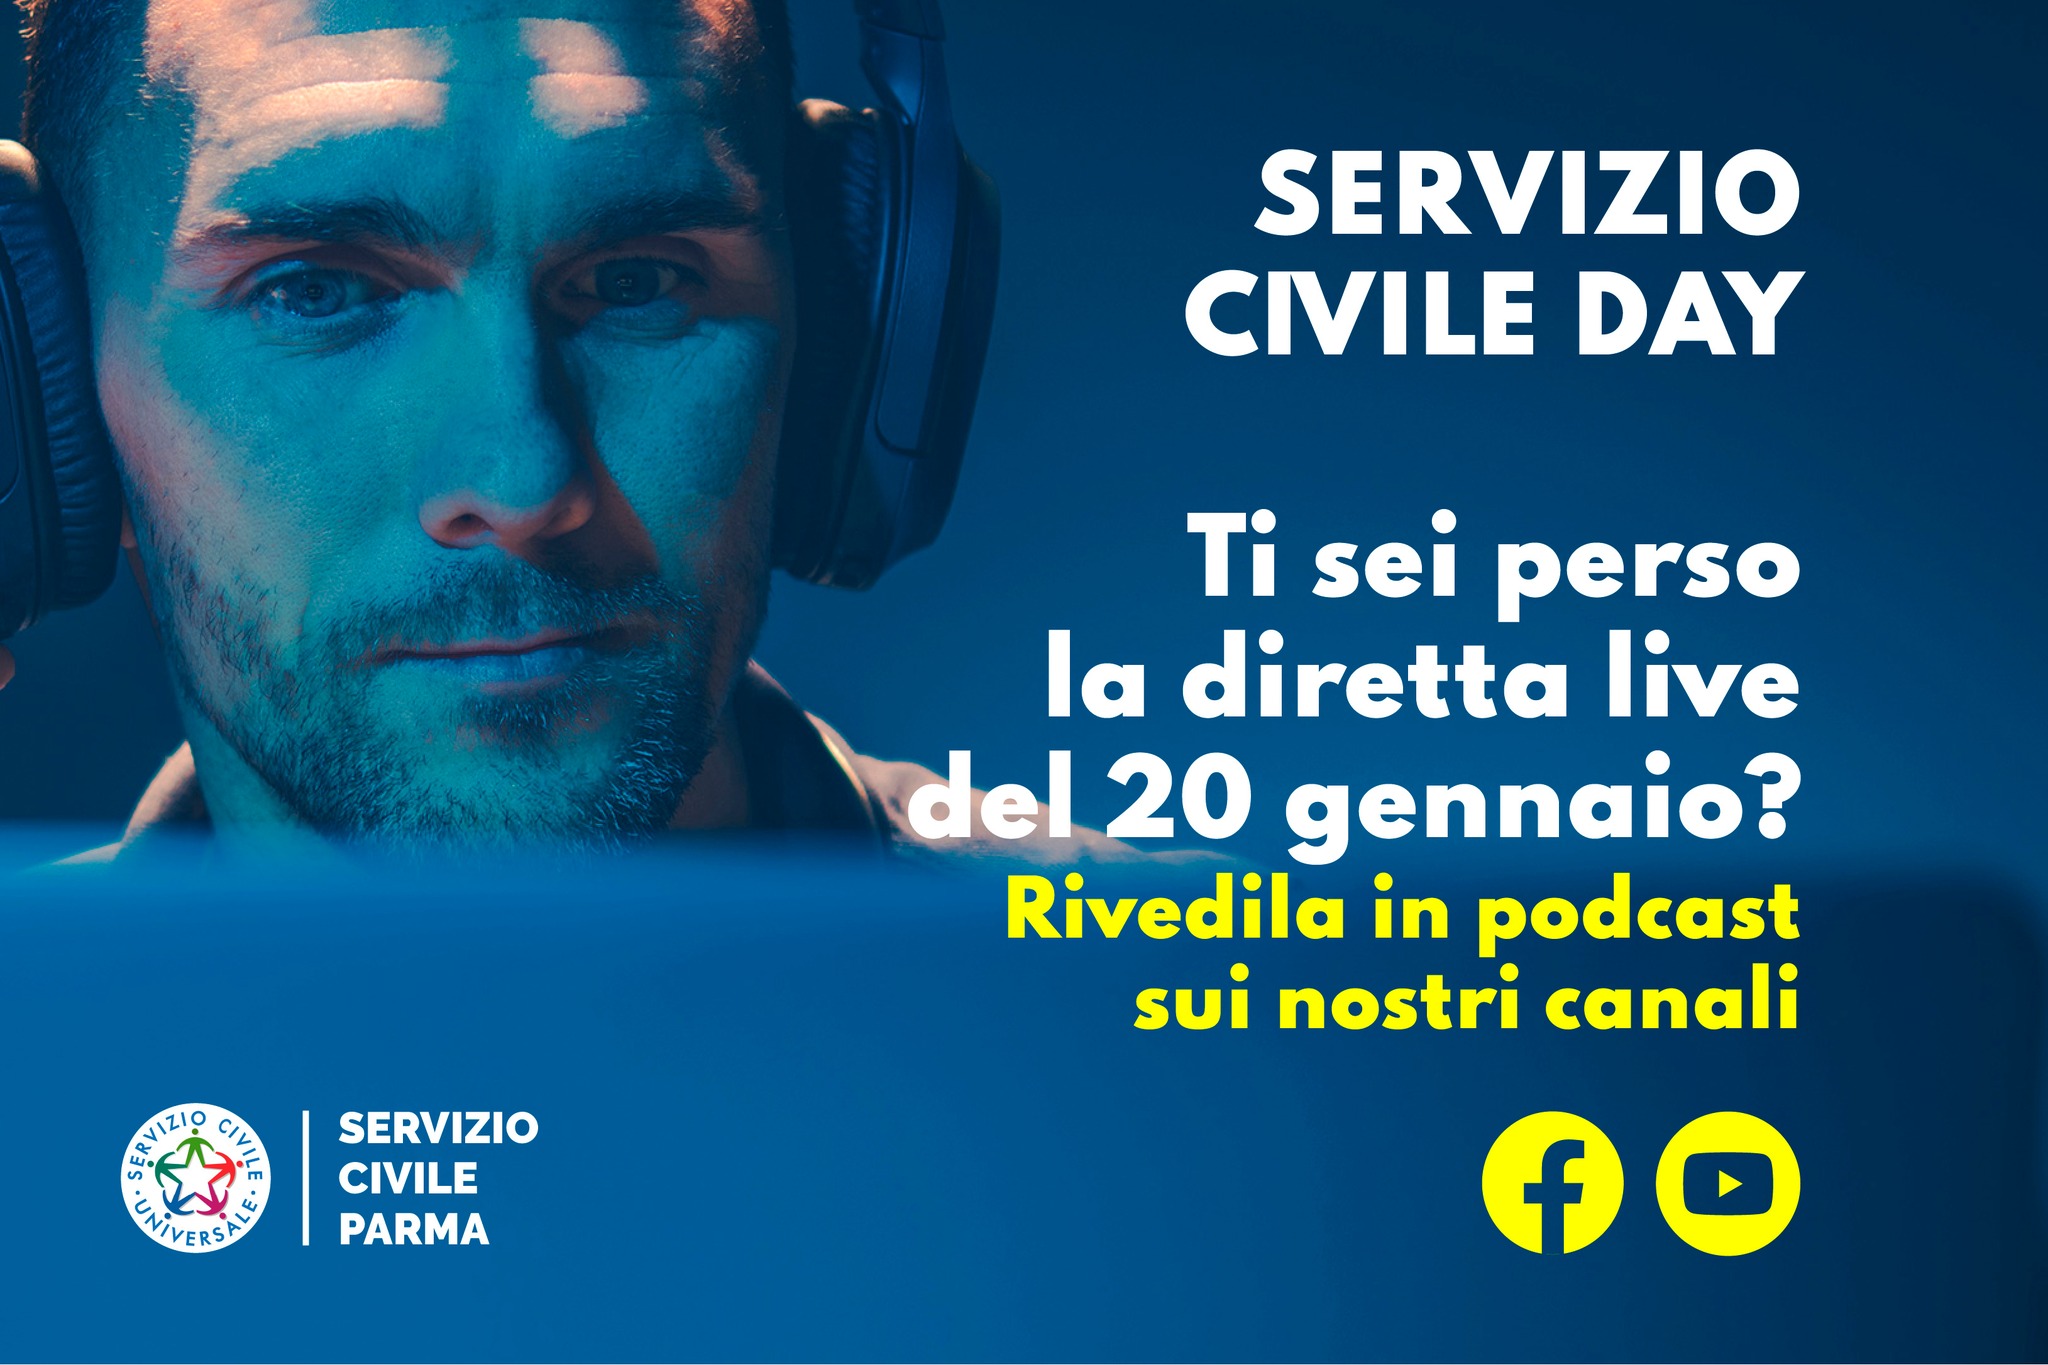 http://www.serviziocivileparma.it/web/servizio-civile-day-rivedilo-in-podcast/